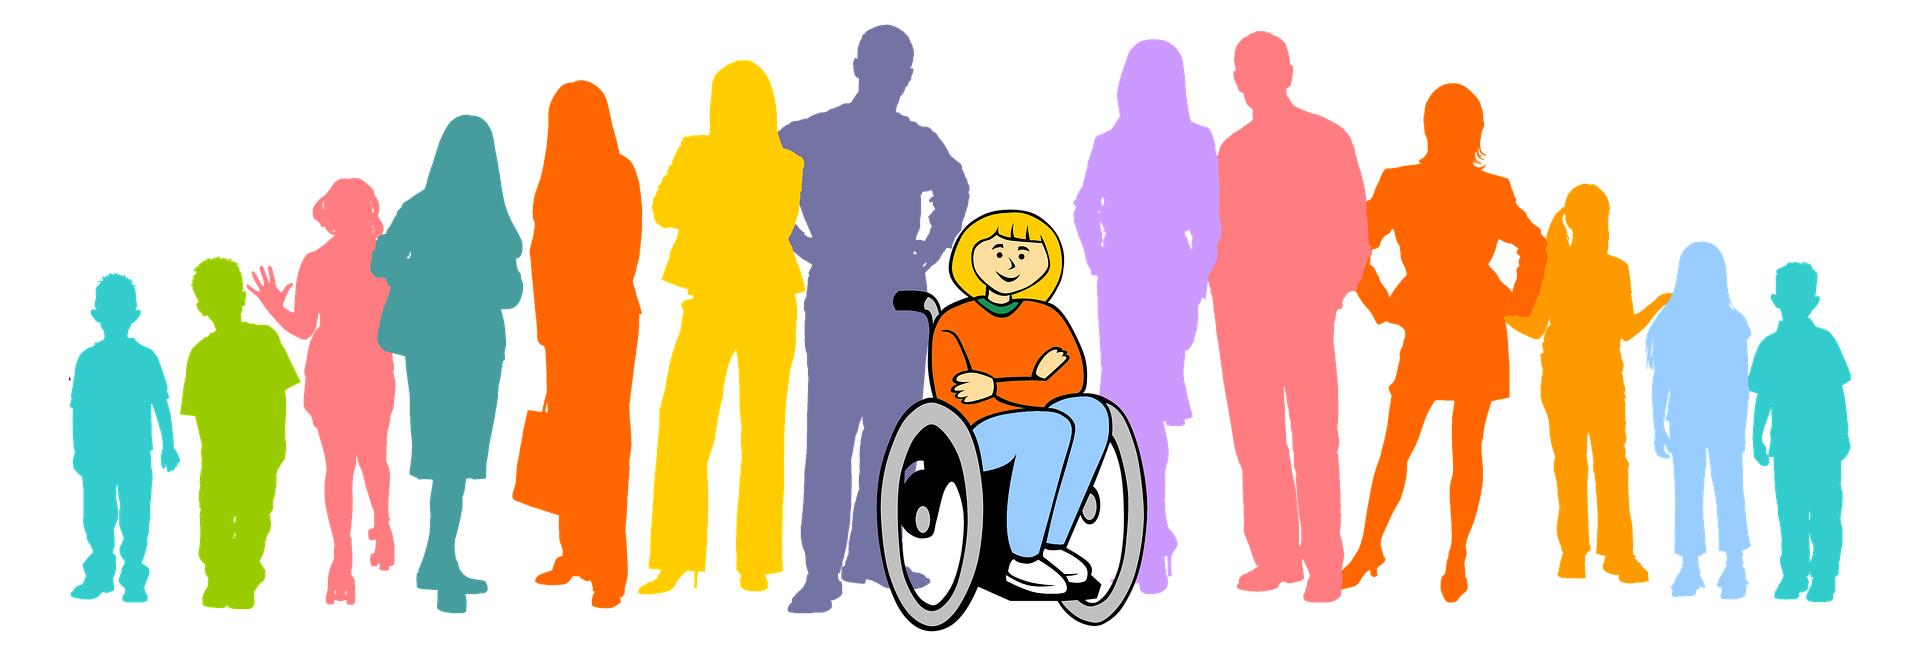 Люди с ограниченными возможностями картинки. Социализация людей с инвалидностью. Люди с ОВЗ. Общество инвалидов. Доступность интеграция